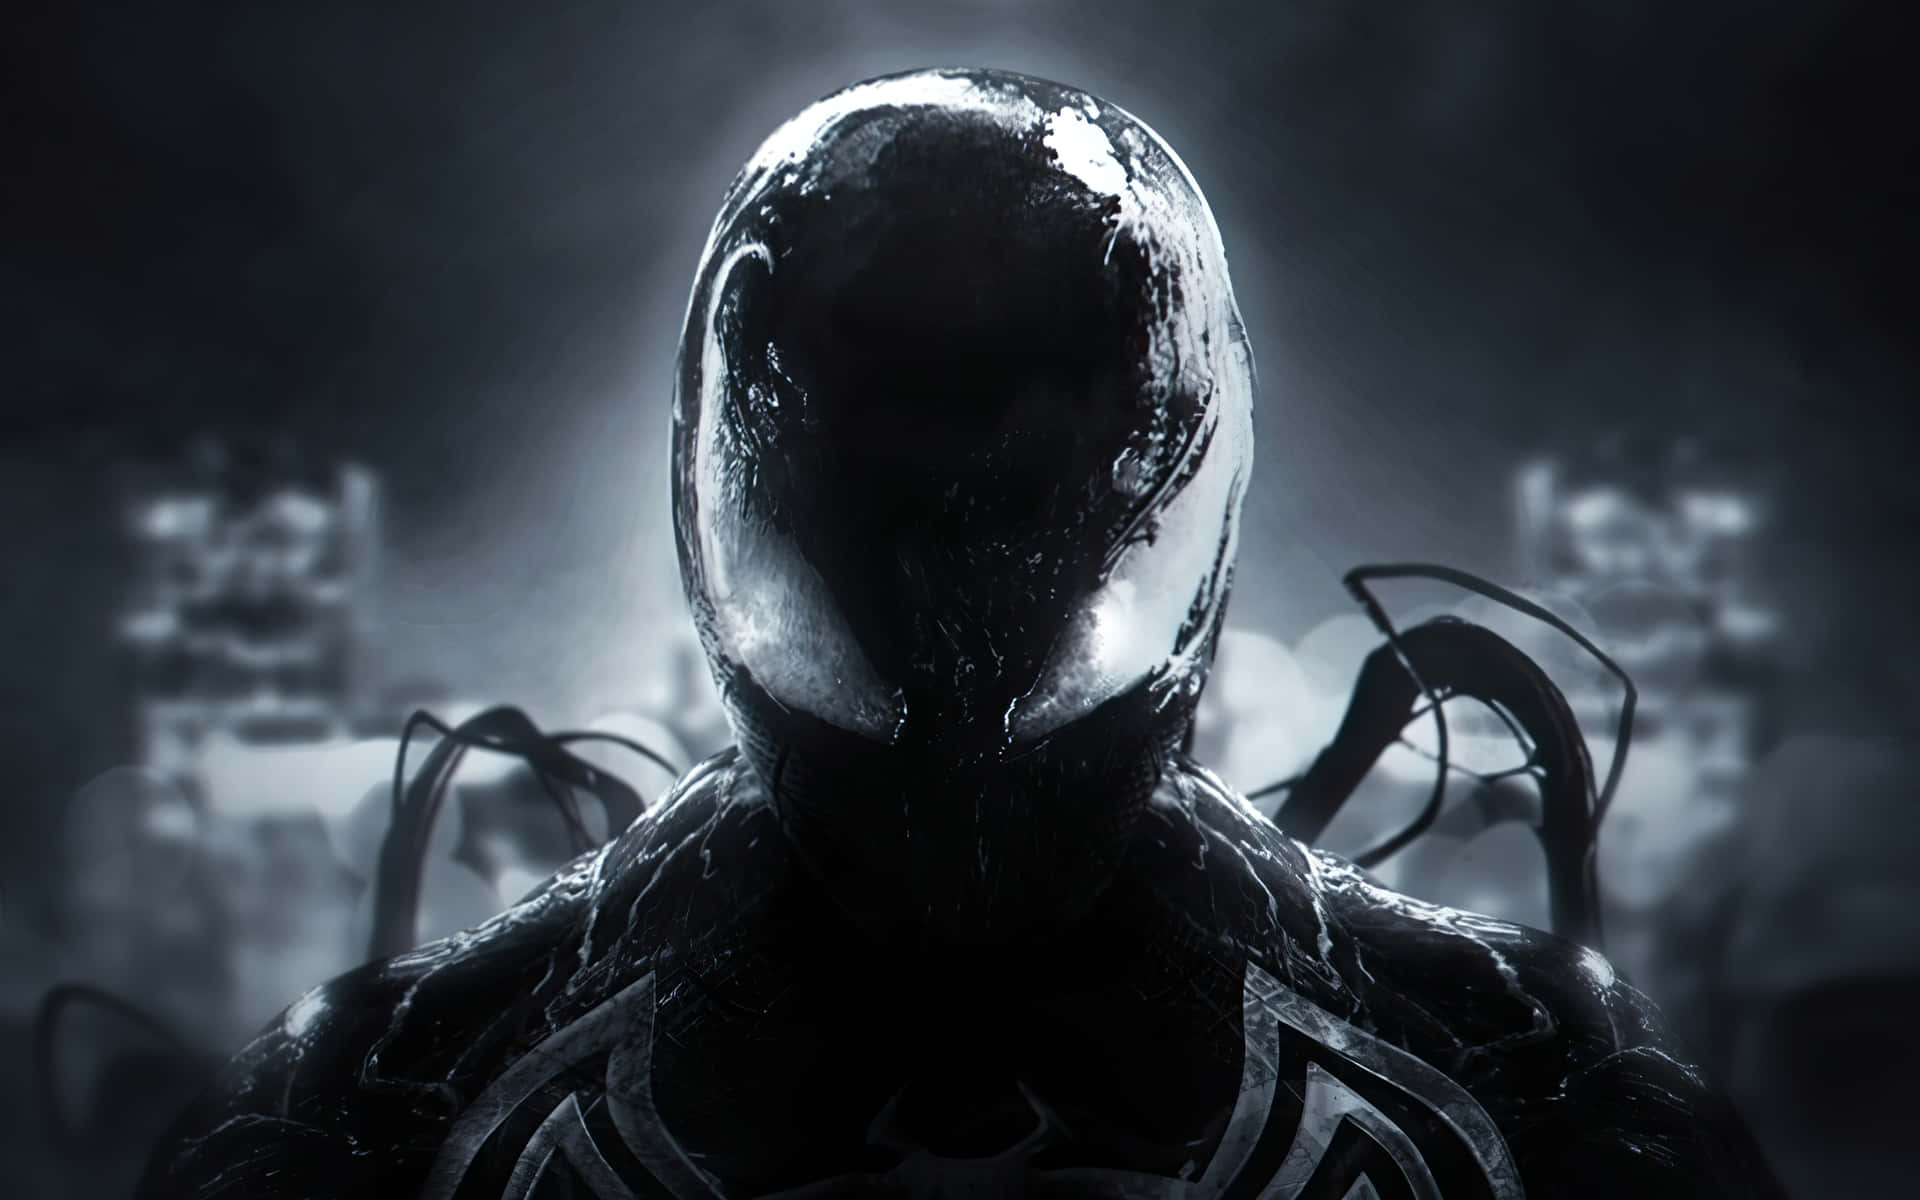 Stunning Symbiote artwork featuring an intense battle Wallpaper